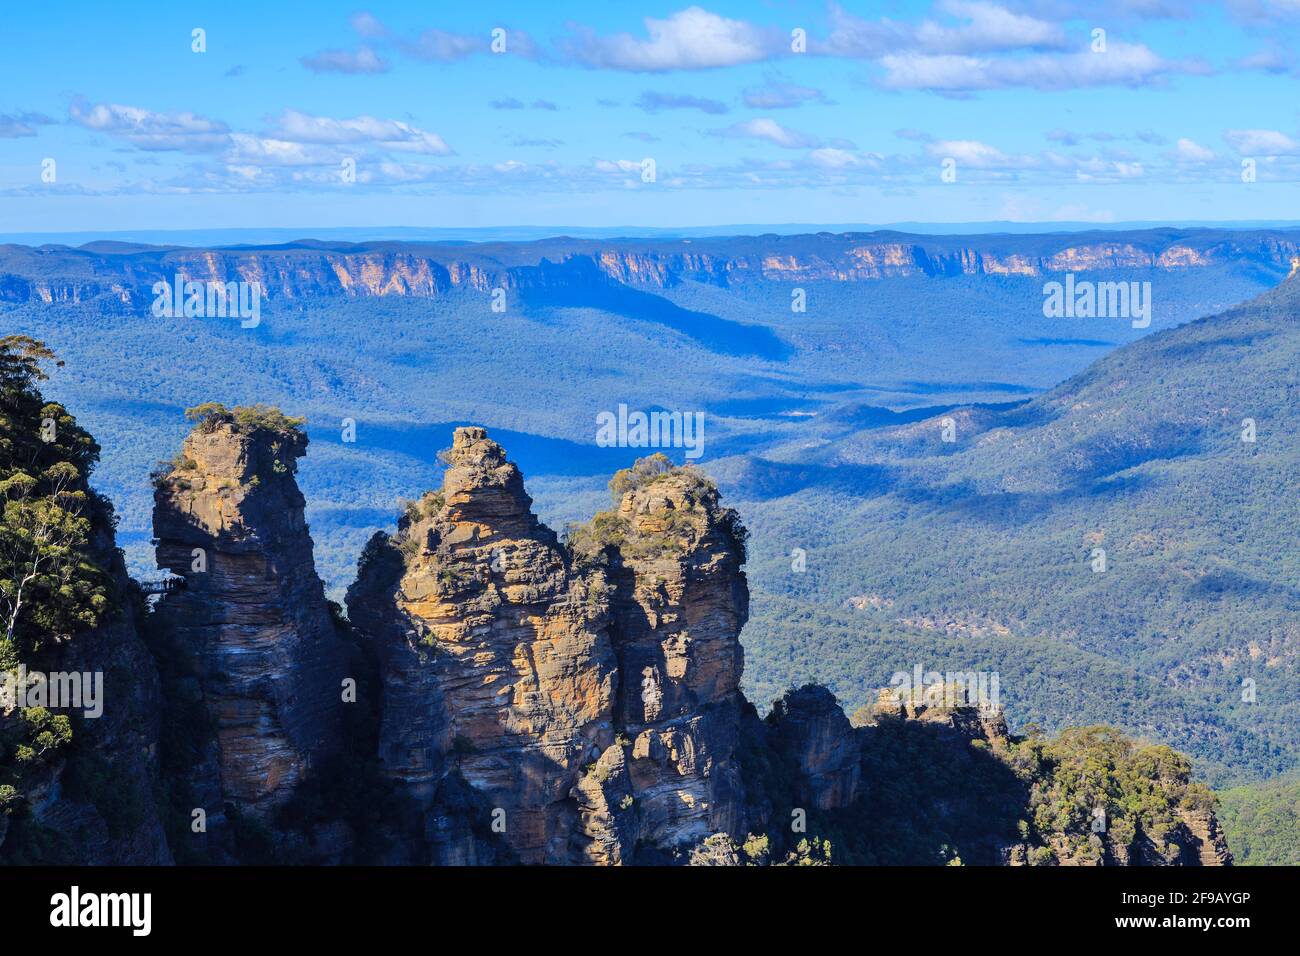 La famosa formazione rocciosa "Three Sisters" nel Blue Mountains National Park, New South Wales, Australia, si affaccia sulla Jamison Valley Foto Stock